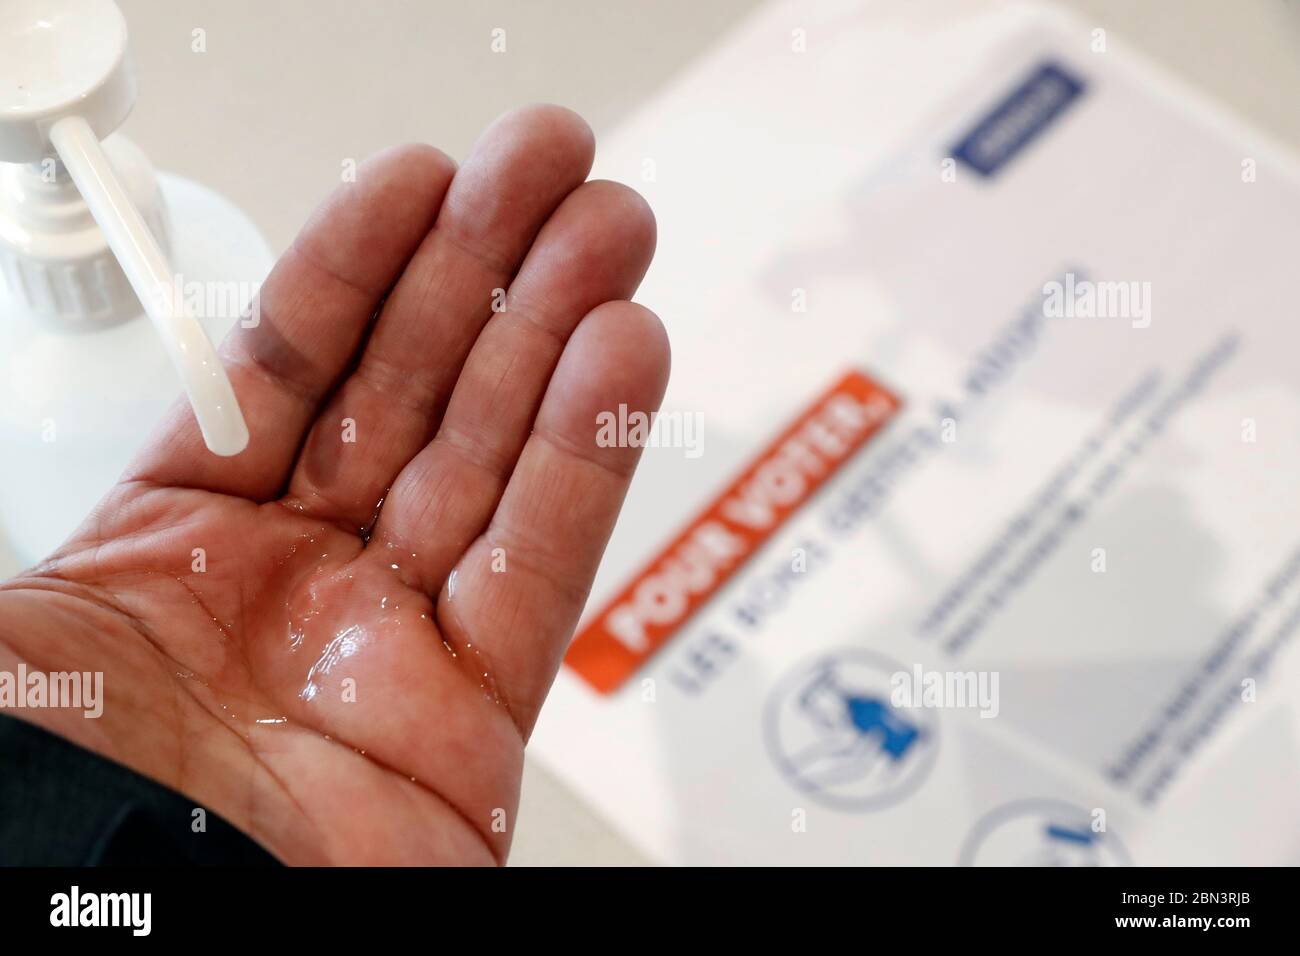 Élection française pendant la crise du coronavirus (COVID-19). Désinfection des mains. Les mains avec gel désinfectant d'alcool empêchent l'épidémie de virus. Banque D'Images